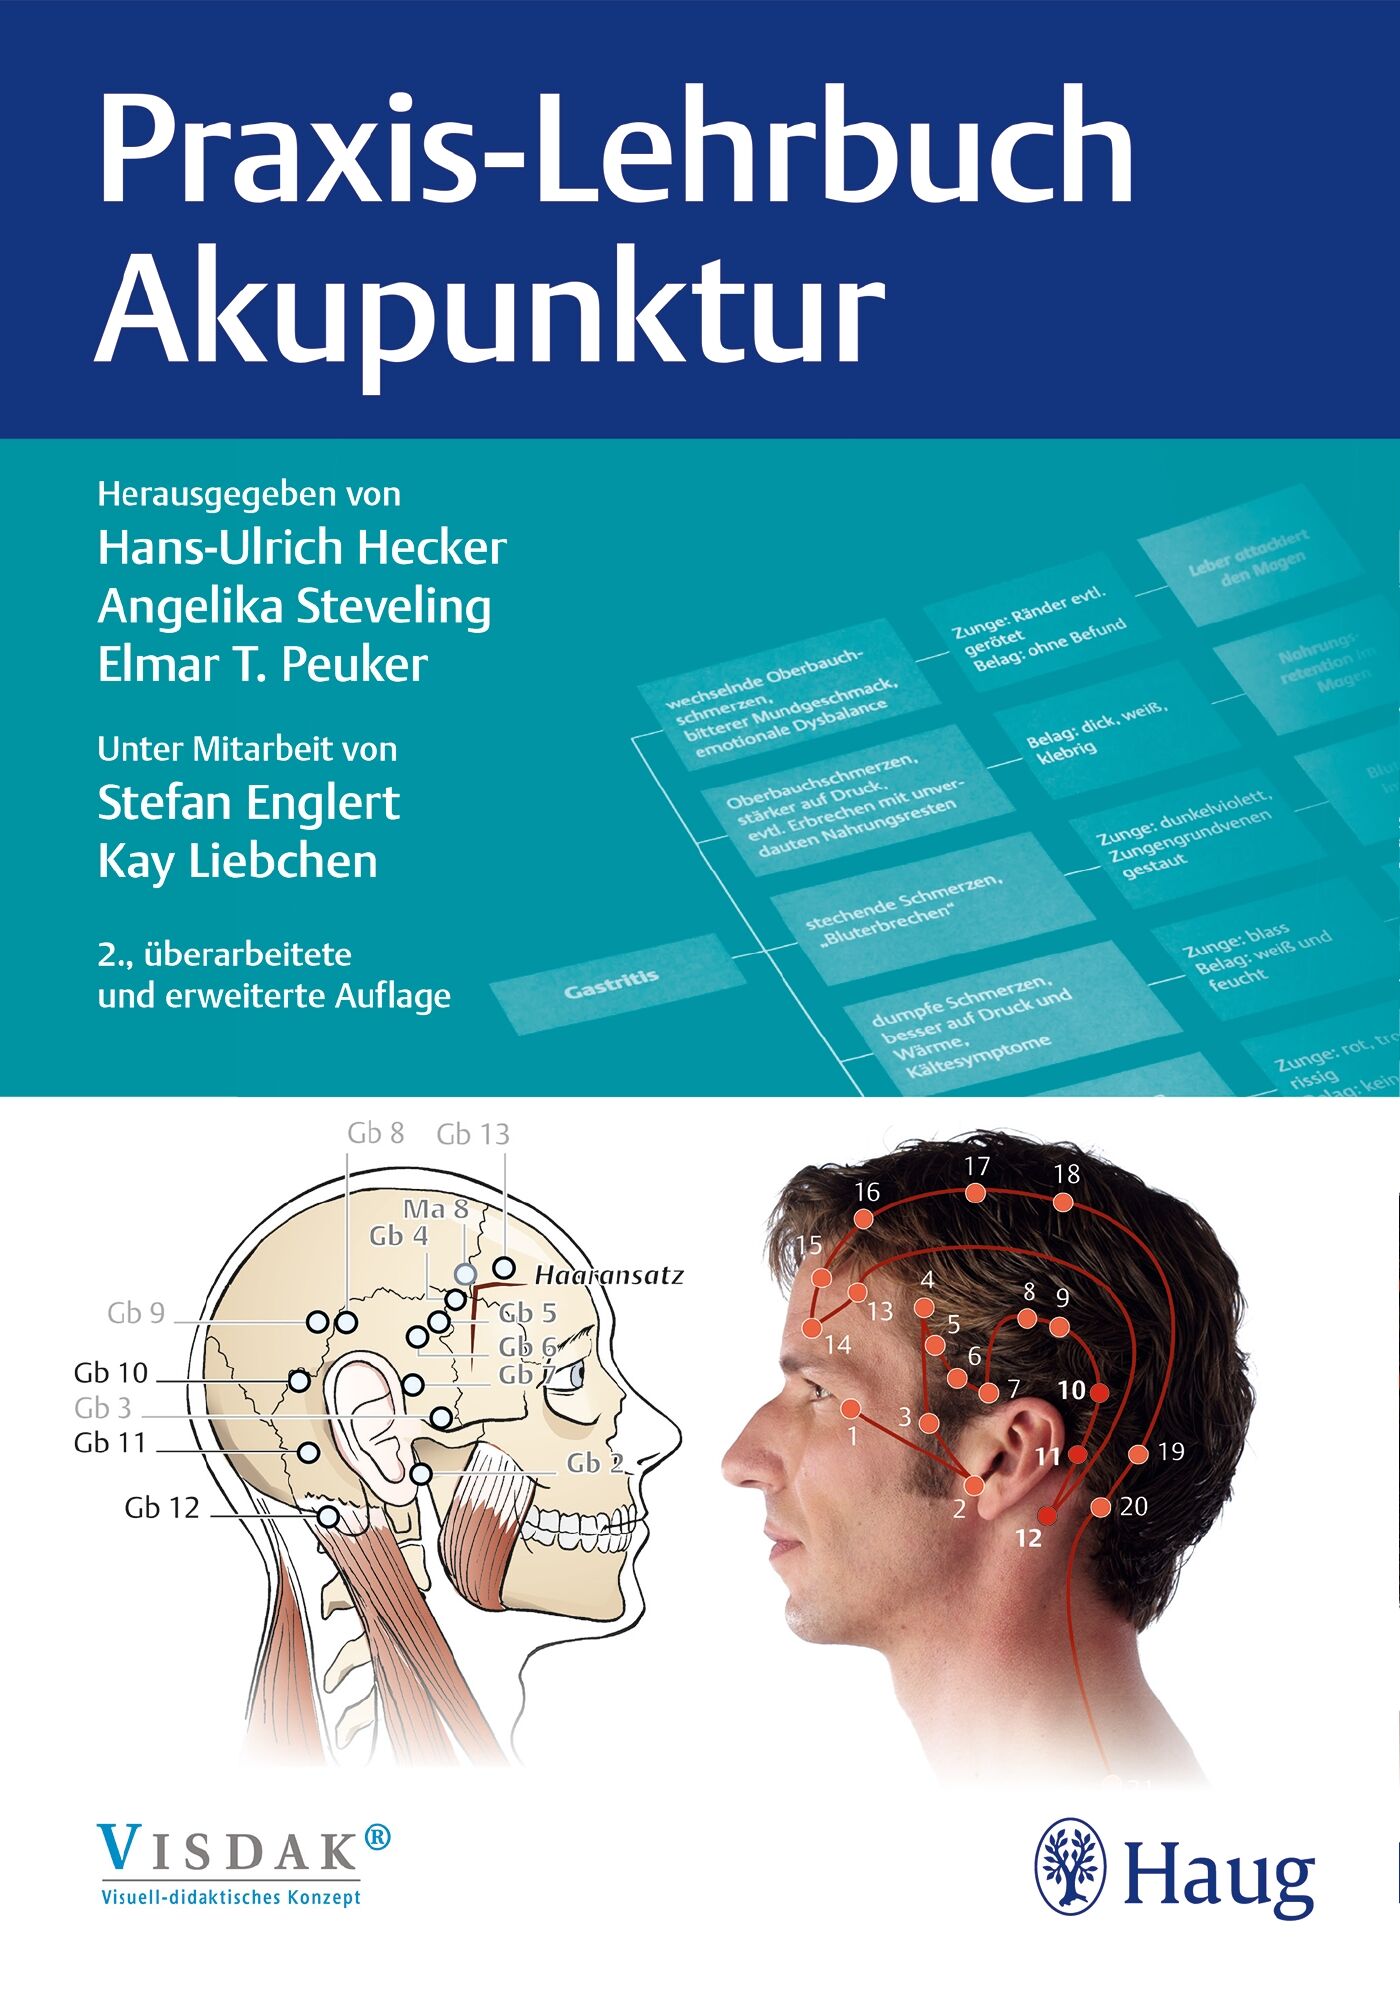 Praxis-Lehrbuch Akupunktur, 9783132400252